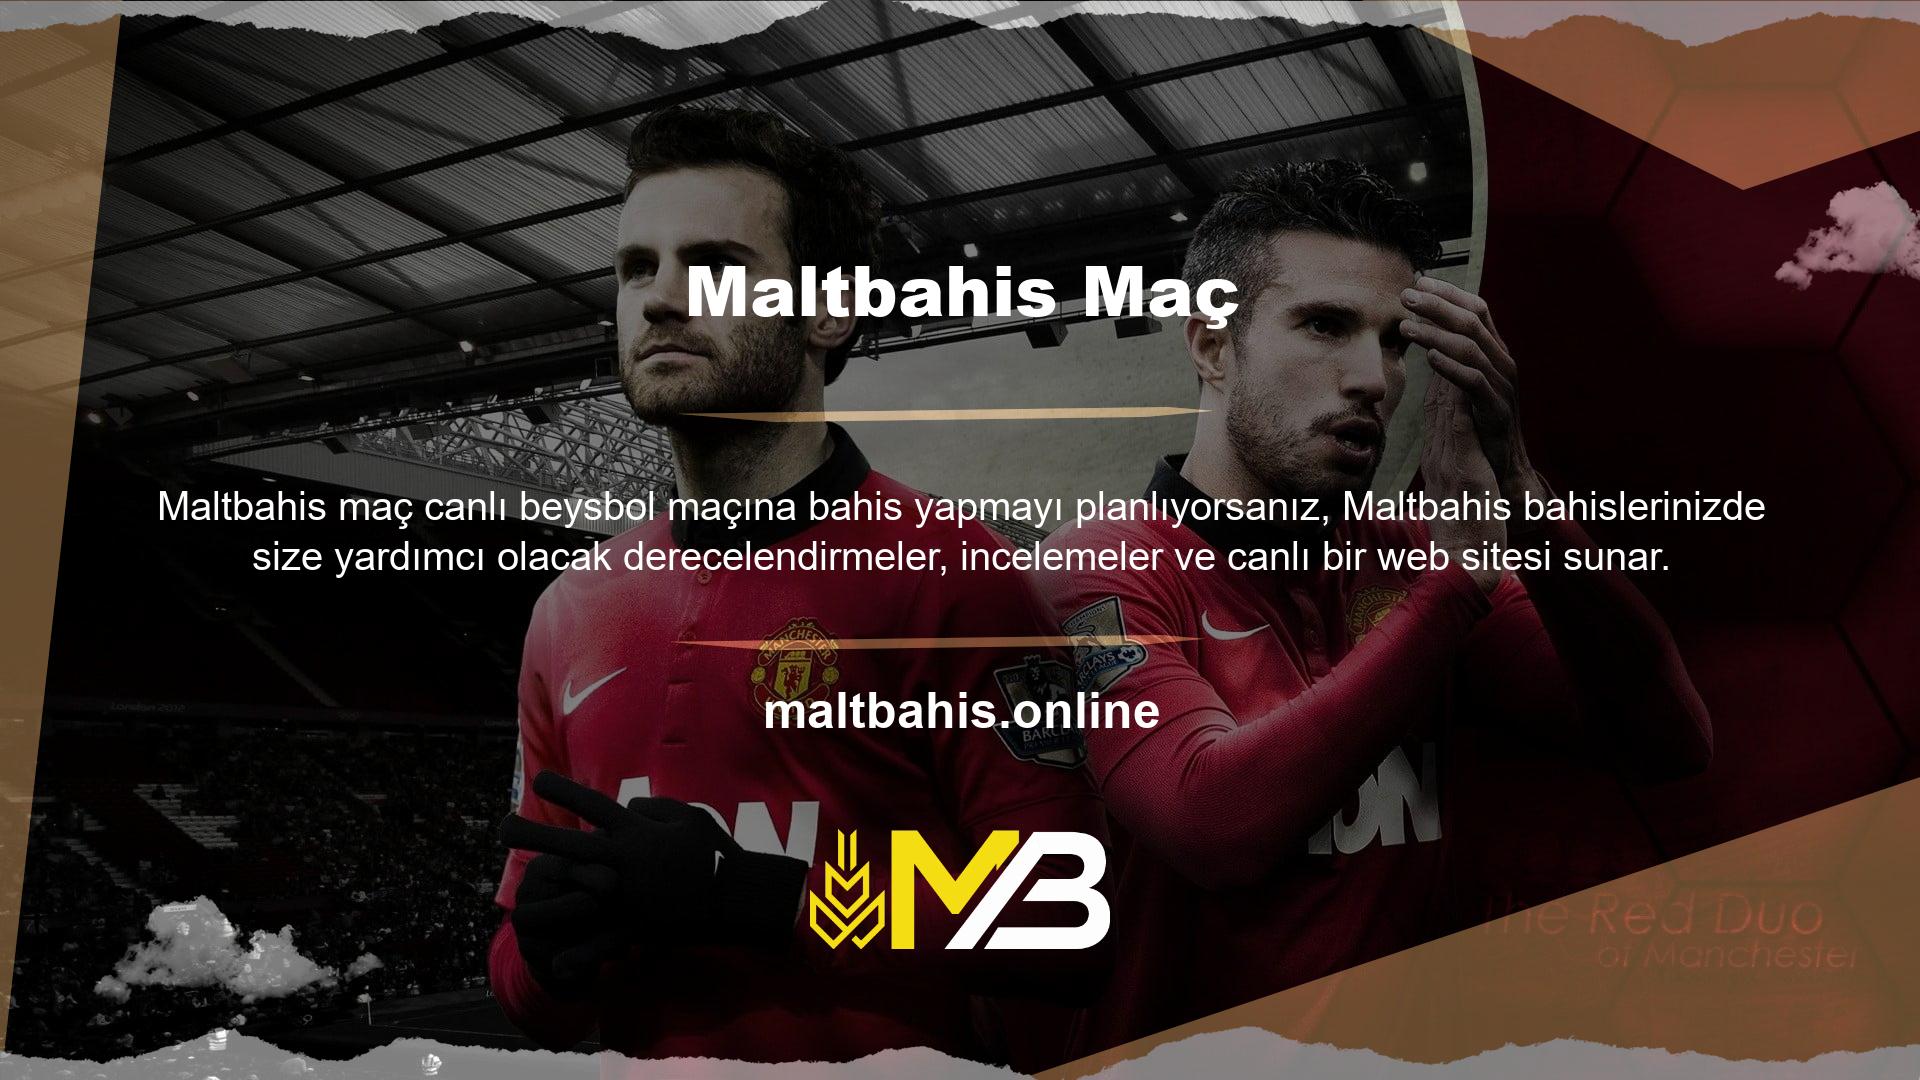 Maltbahis en modern web sitesidir ve harika bir kullanıcı deneyimi sunar